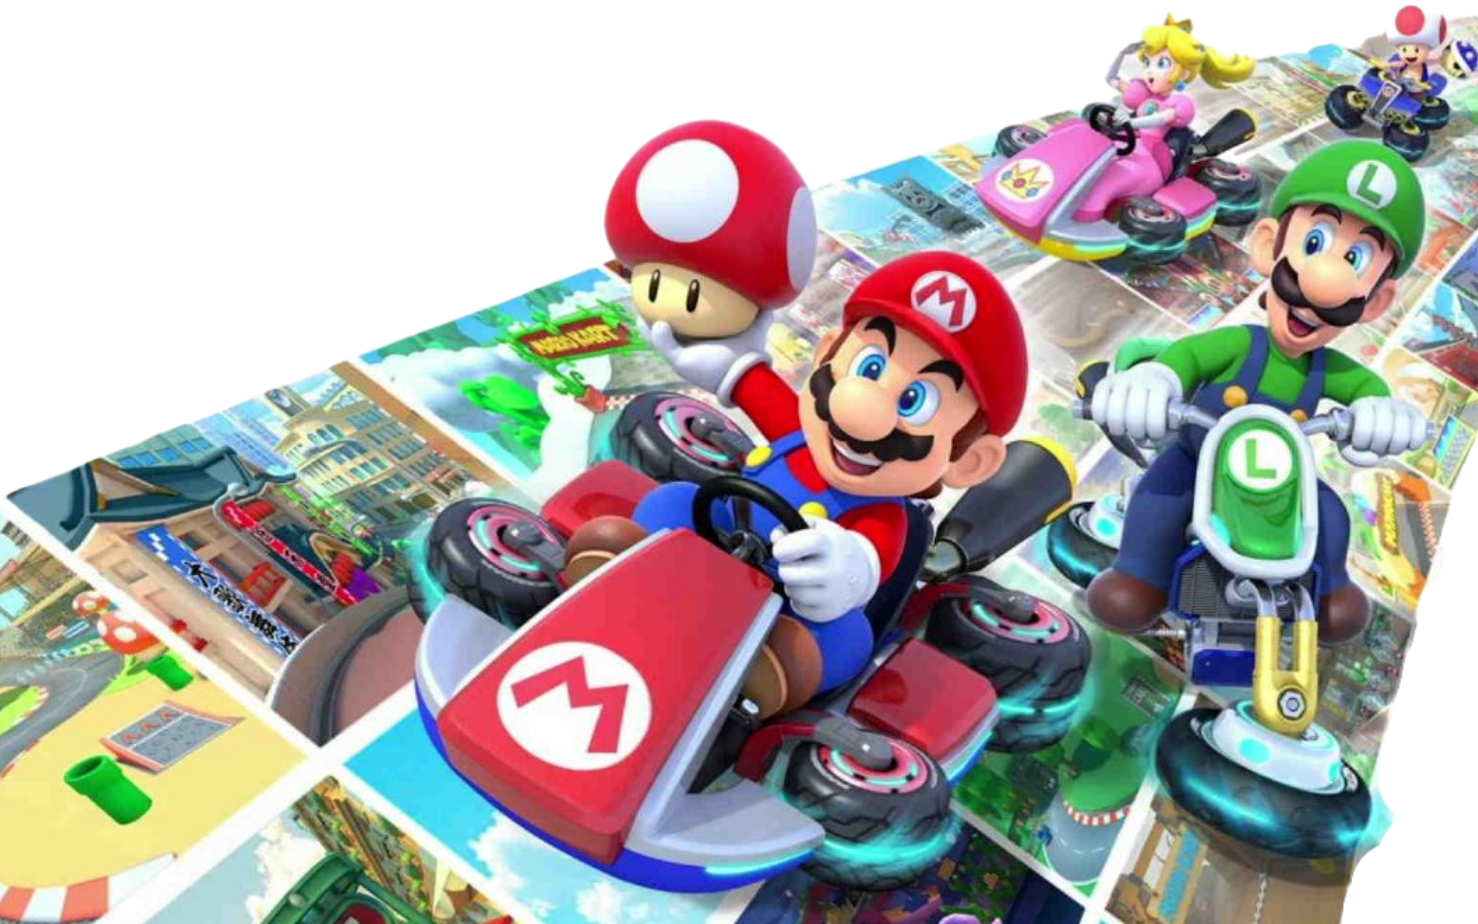 Pôster do novo DLC de Mario Kart 8 Deluxe